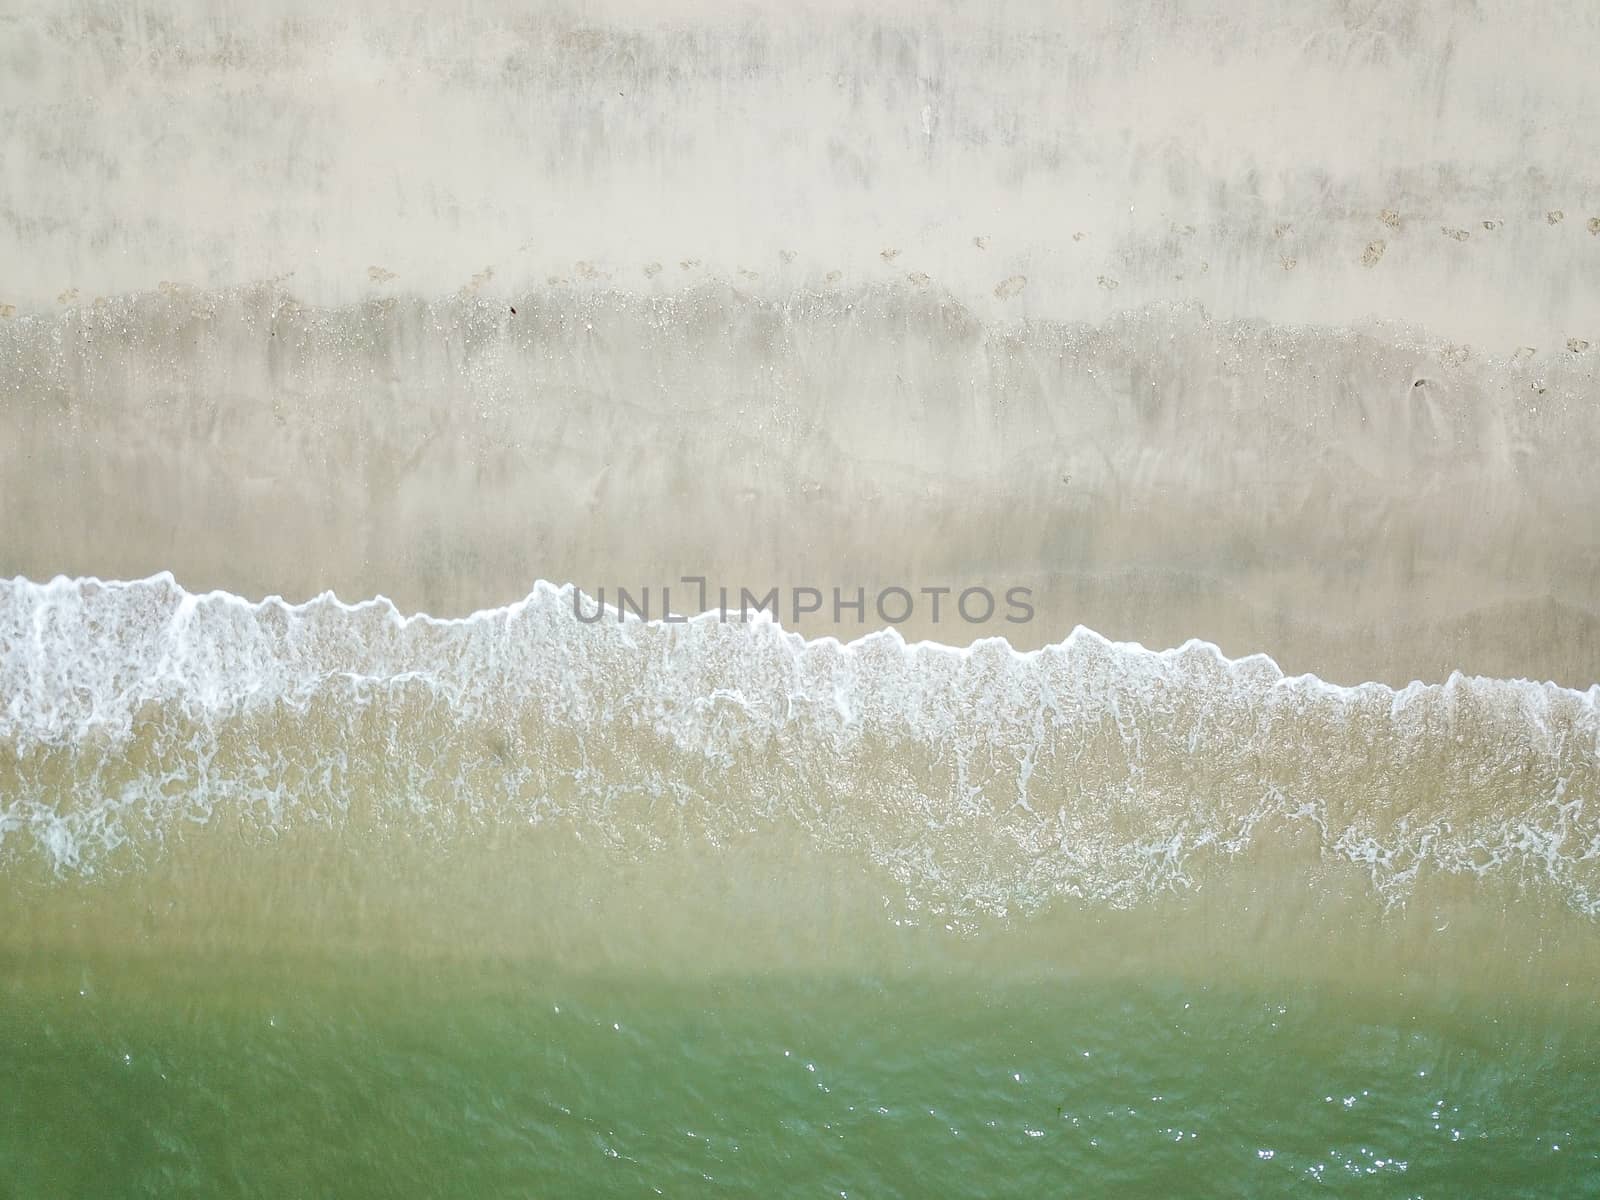 Blue ocean wave on clean sandy beach by silverwings